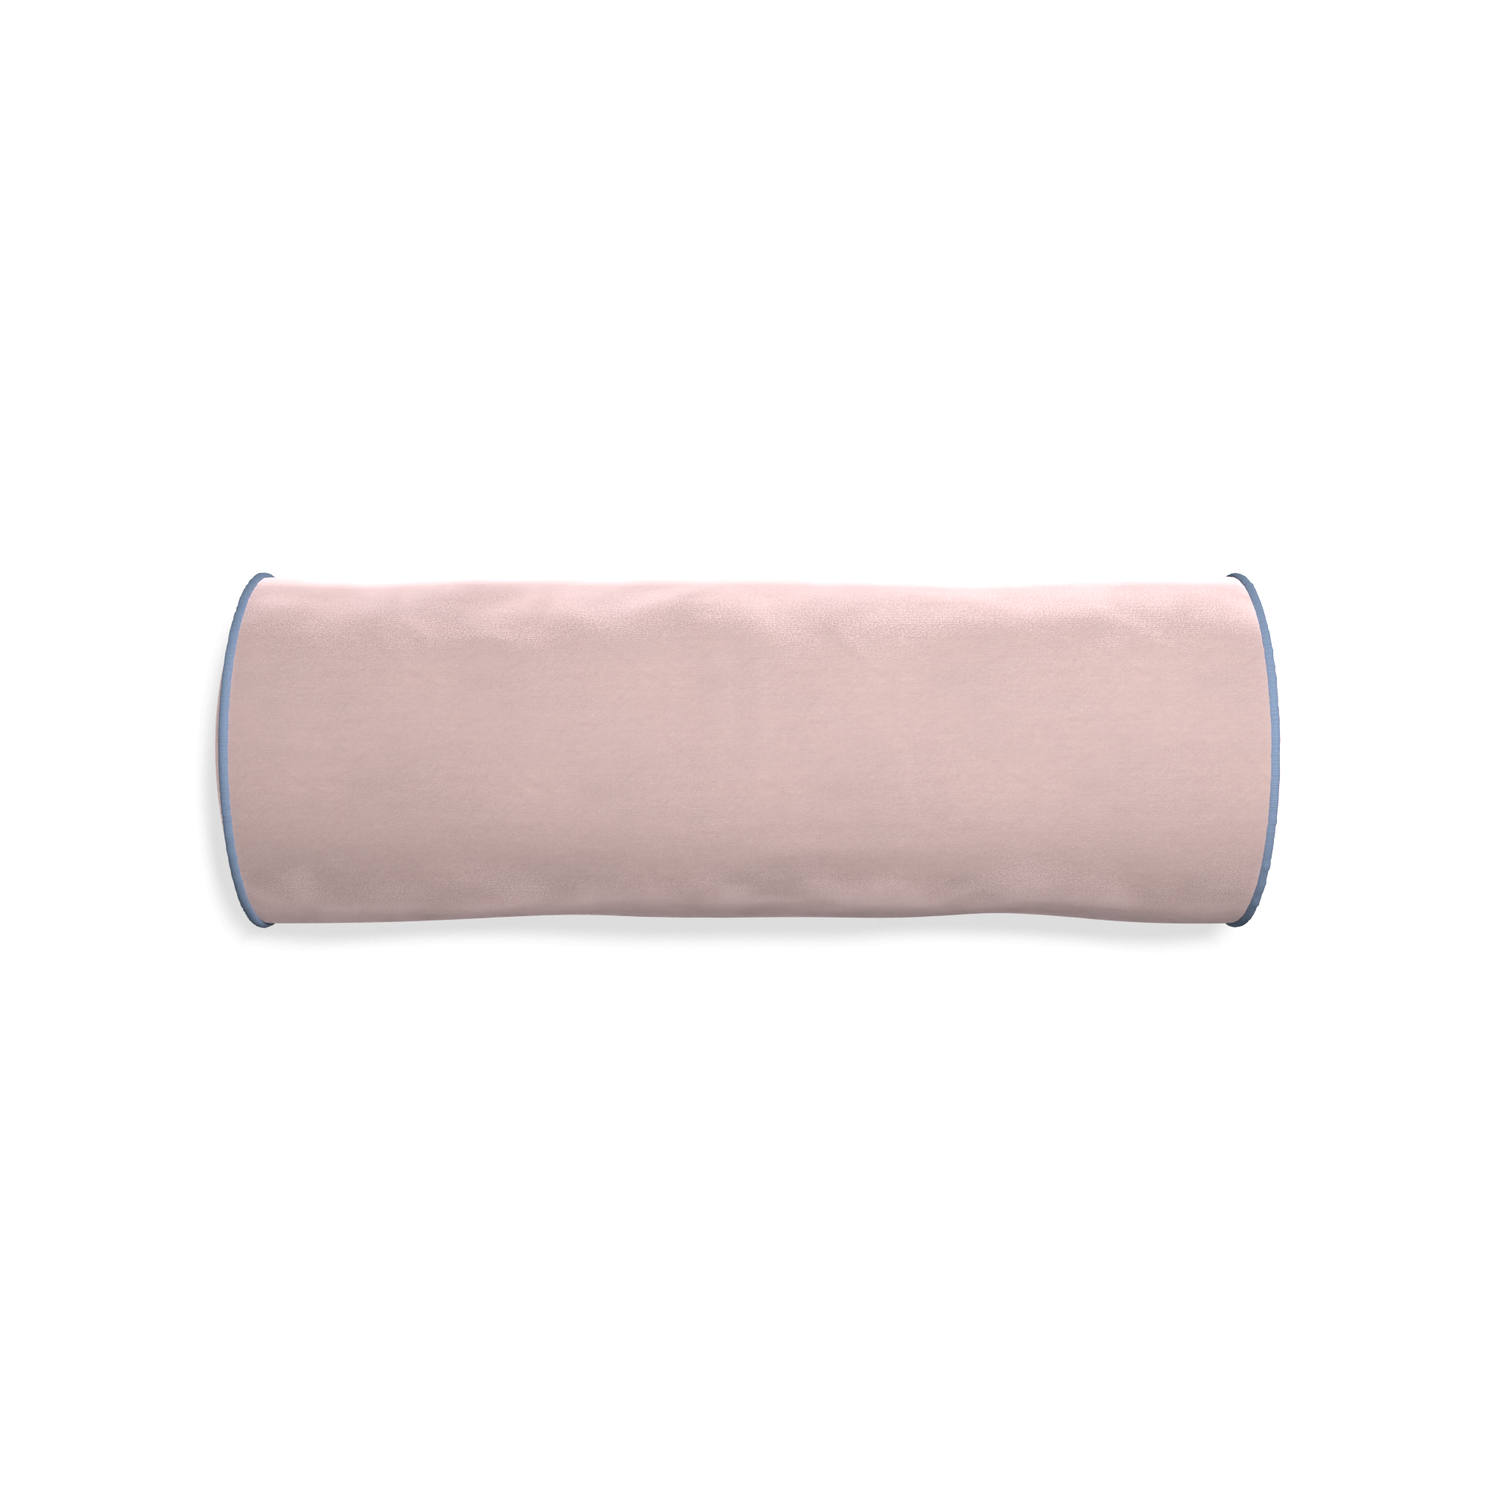 bolster light pink velvet pillow sky blue piping 